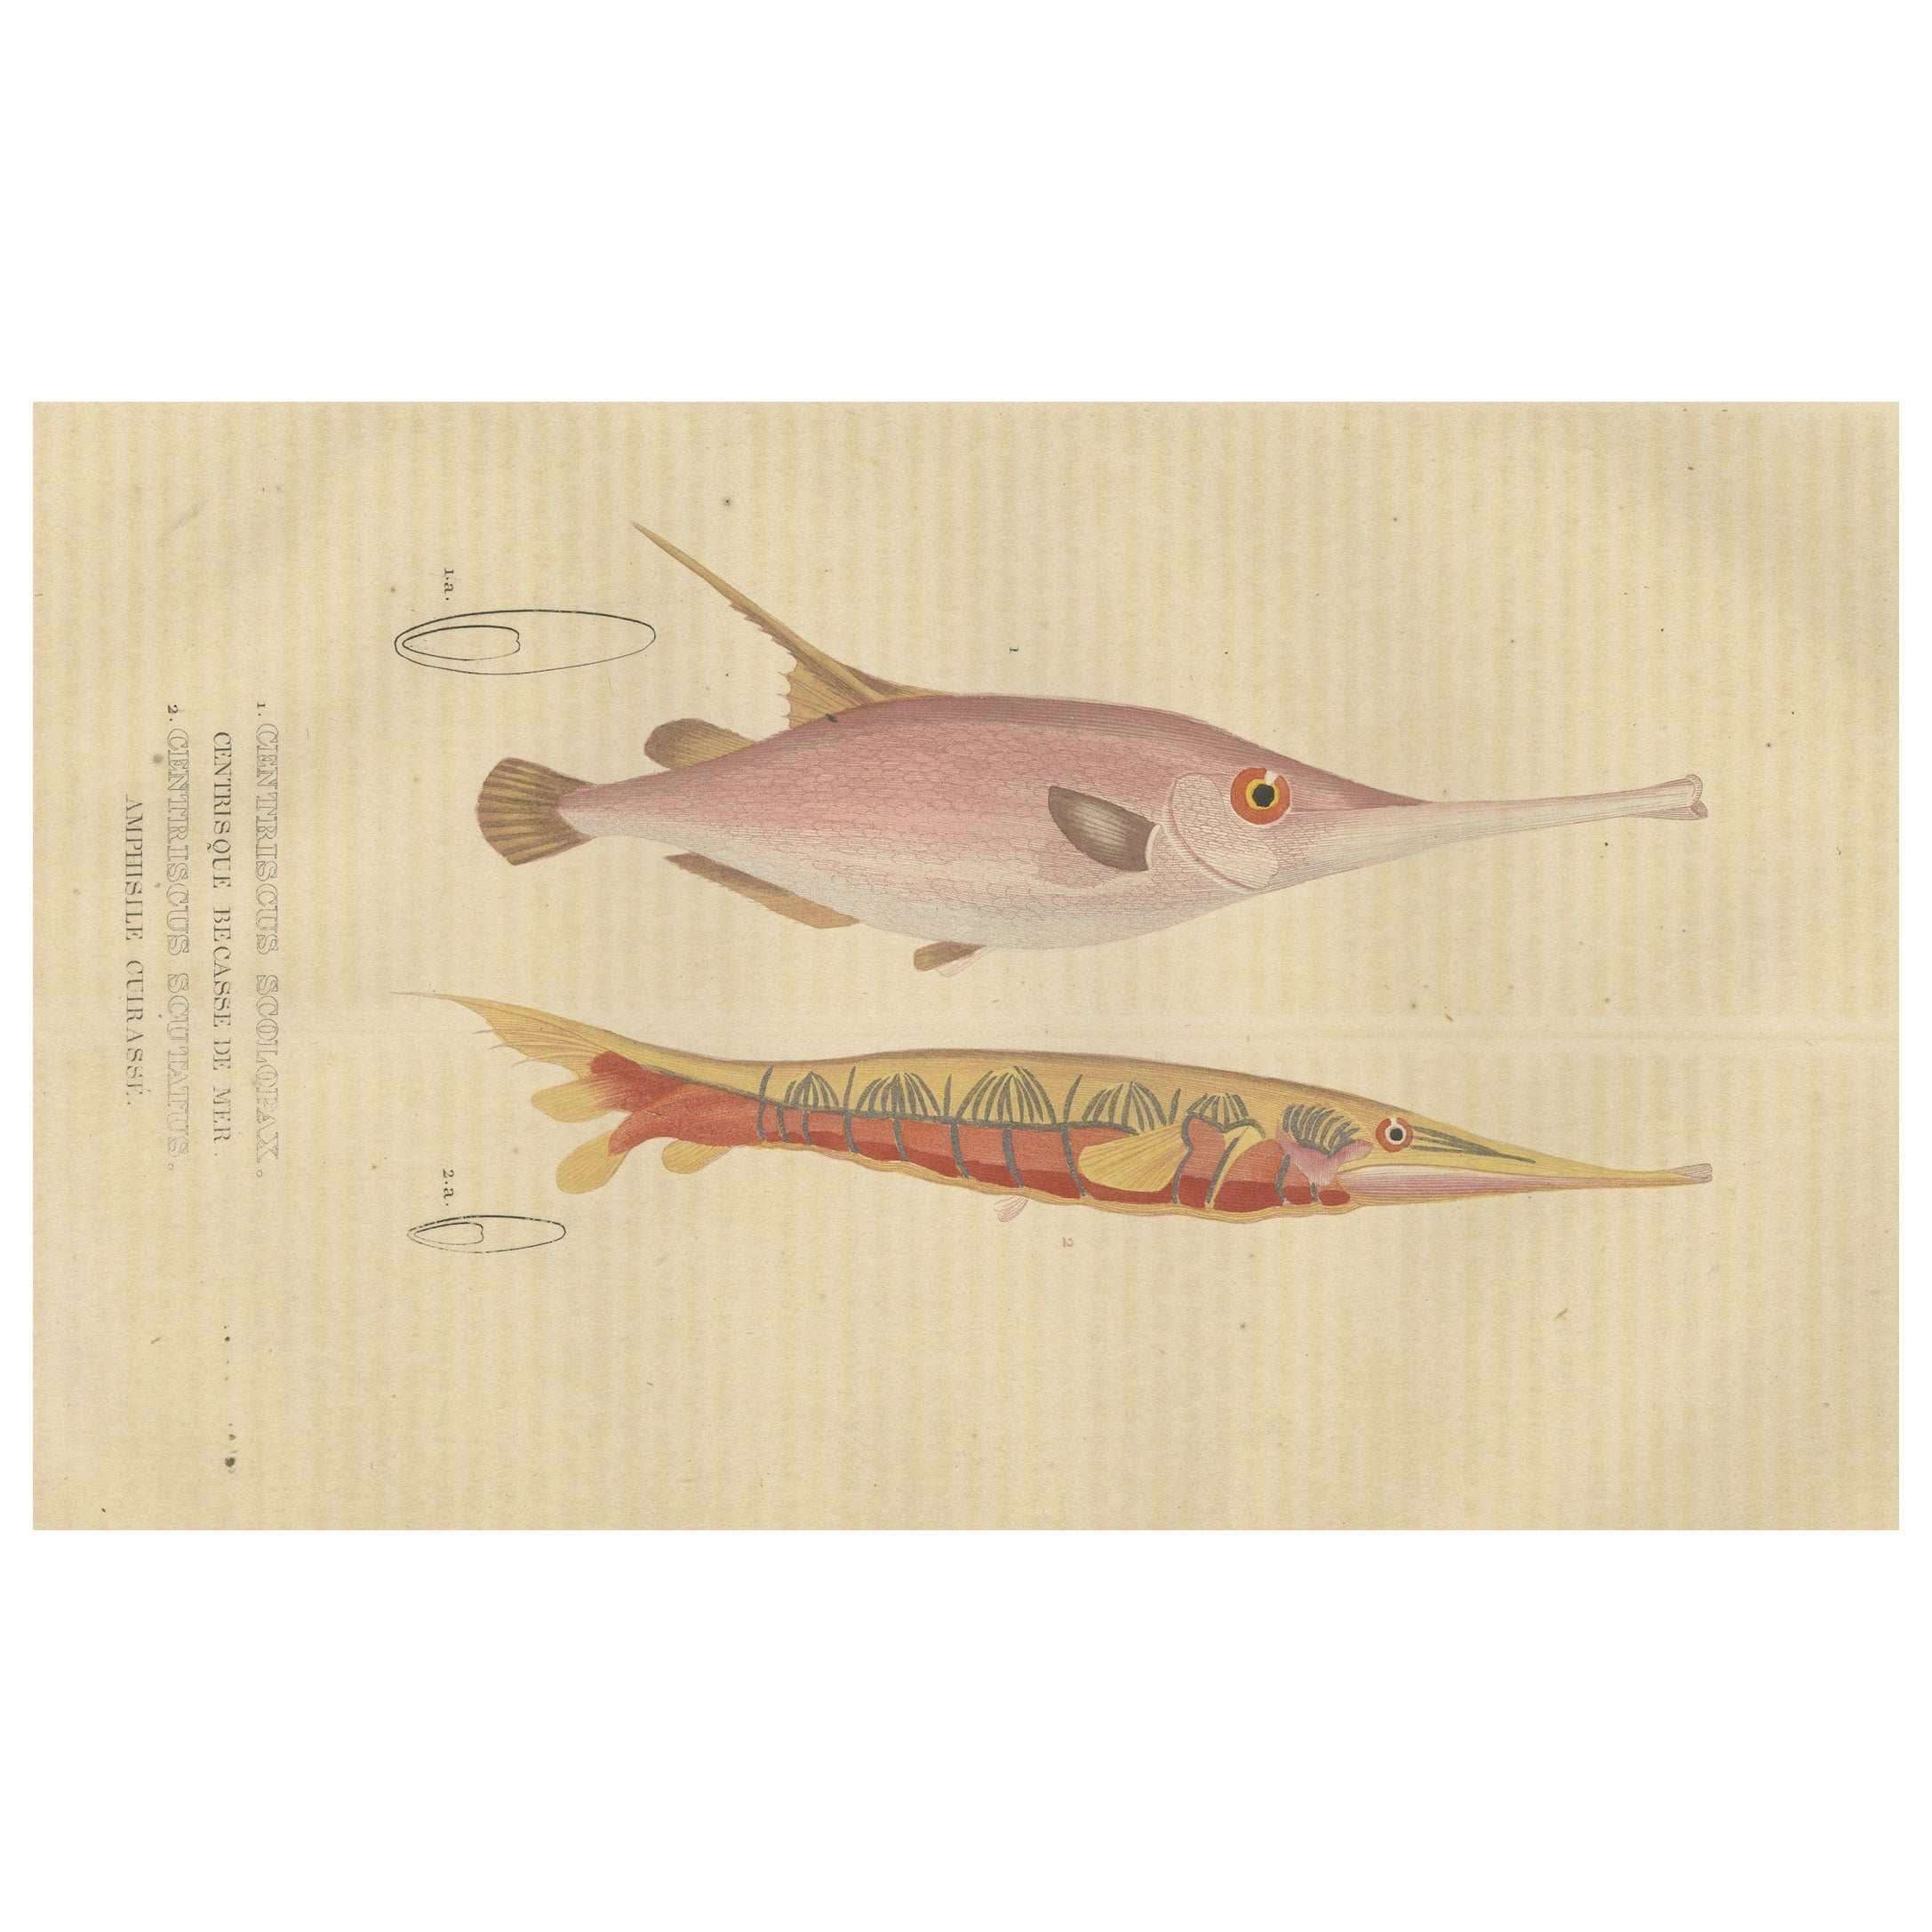 Eleganz unter Wasser: Razorfish und Shrimpfish - Eine Studie eines Meeresstichs, 1845